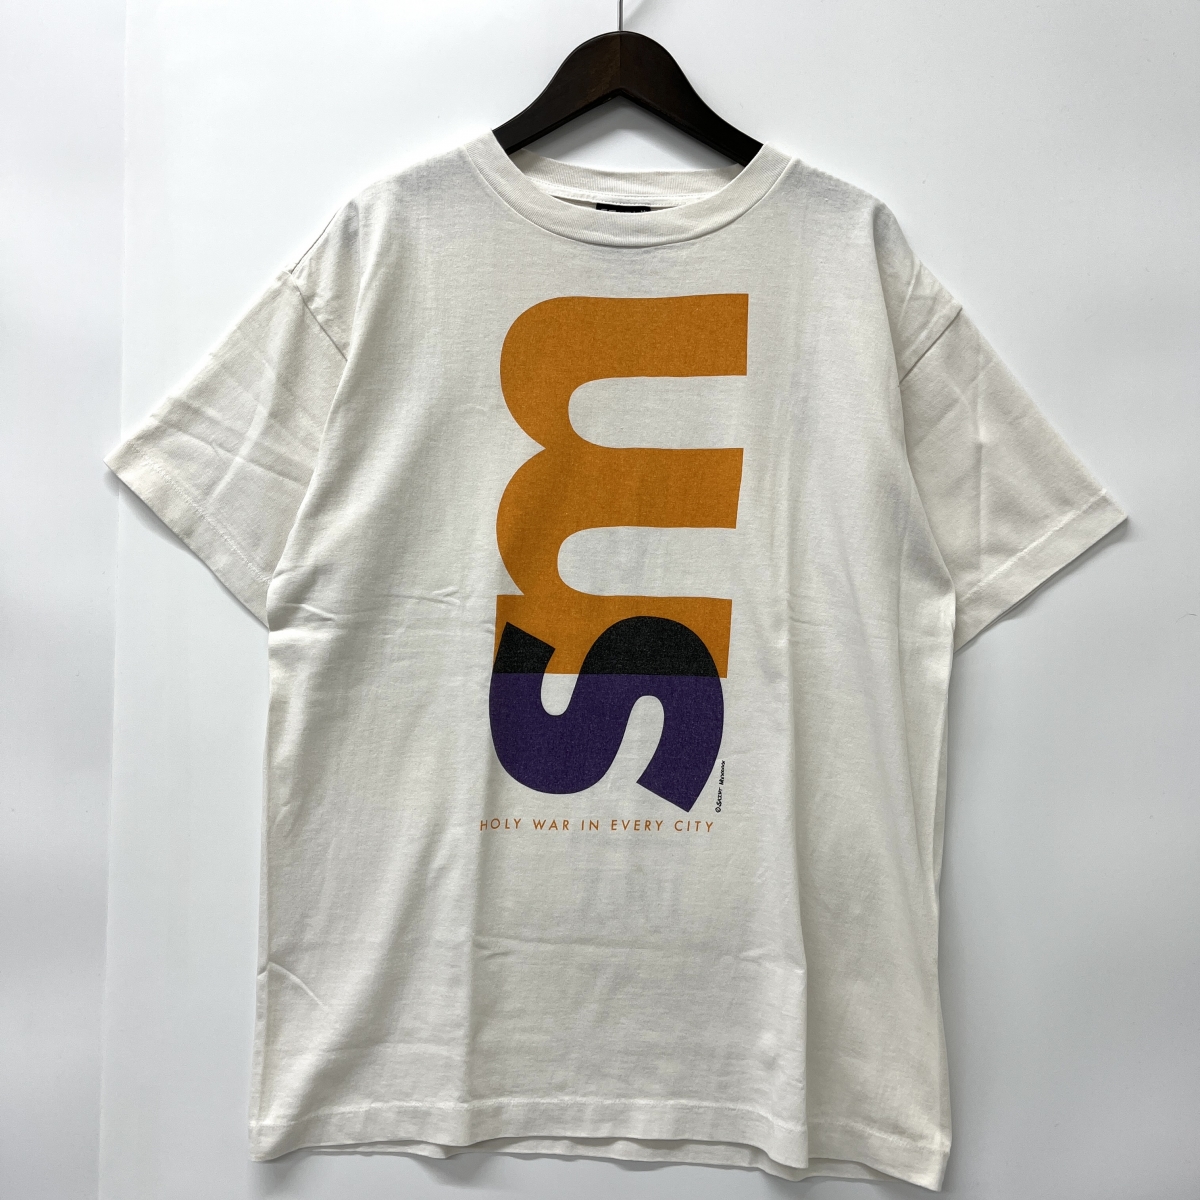 セントマイケルの21年製 ホワイト NEW ORDER コットン Tシャツ SM-A21-0000-009の買取実績です。